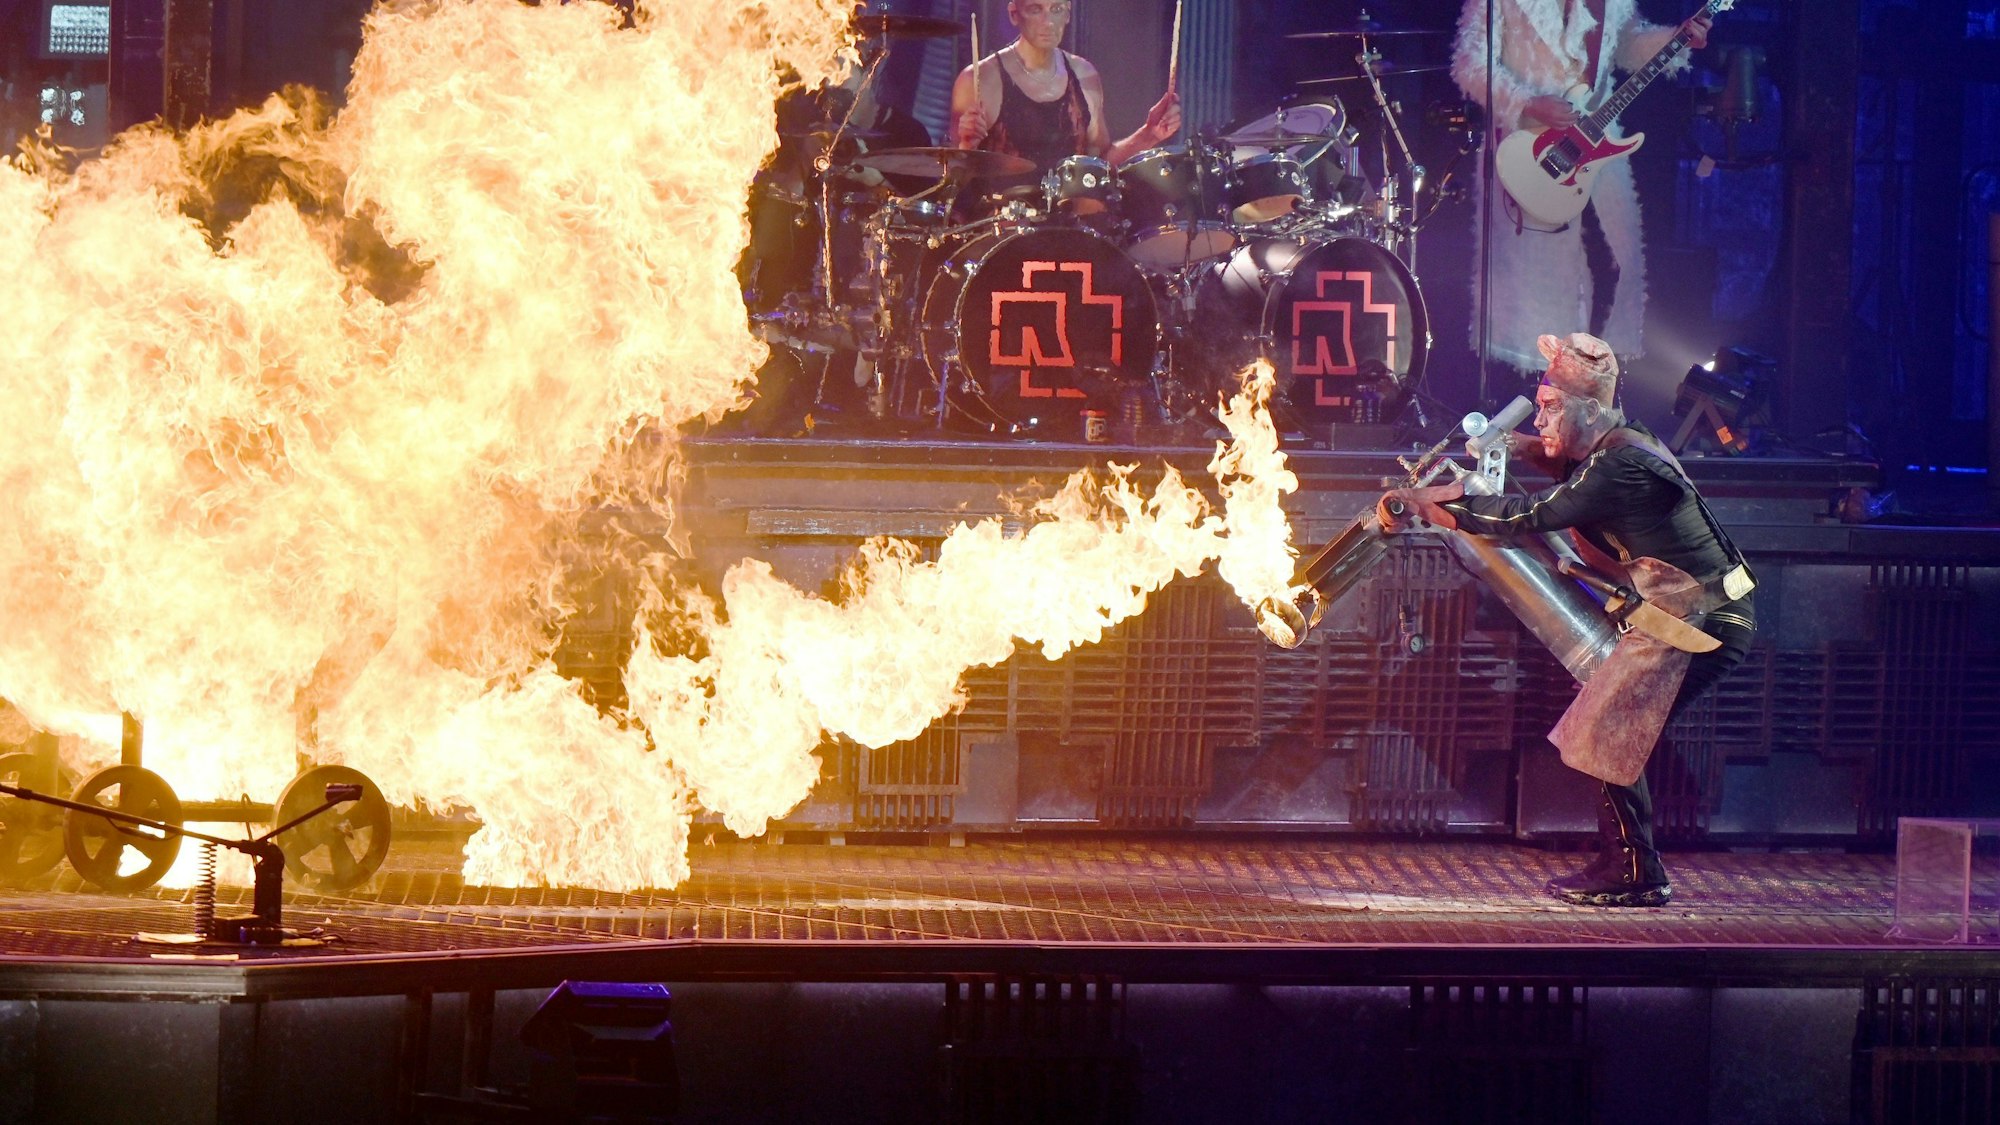 Rammstein Frontsänger Till Lindemann (r) feuert  auf der Bühne mit einem Flammenwerfer auf Band-Mitglied Christian Lorenz (l, im Feuer) während des Titels «Mein Teil». Rammstein sind auf Deutschland-Tournee mit ihrem neuen Album «Zeit». Foto: Malte Krudewig/dpa +++ dpa-Bildfunk +++